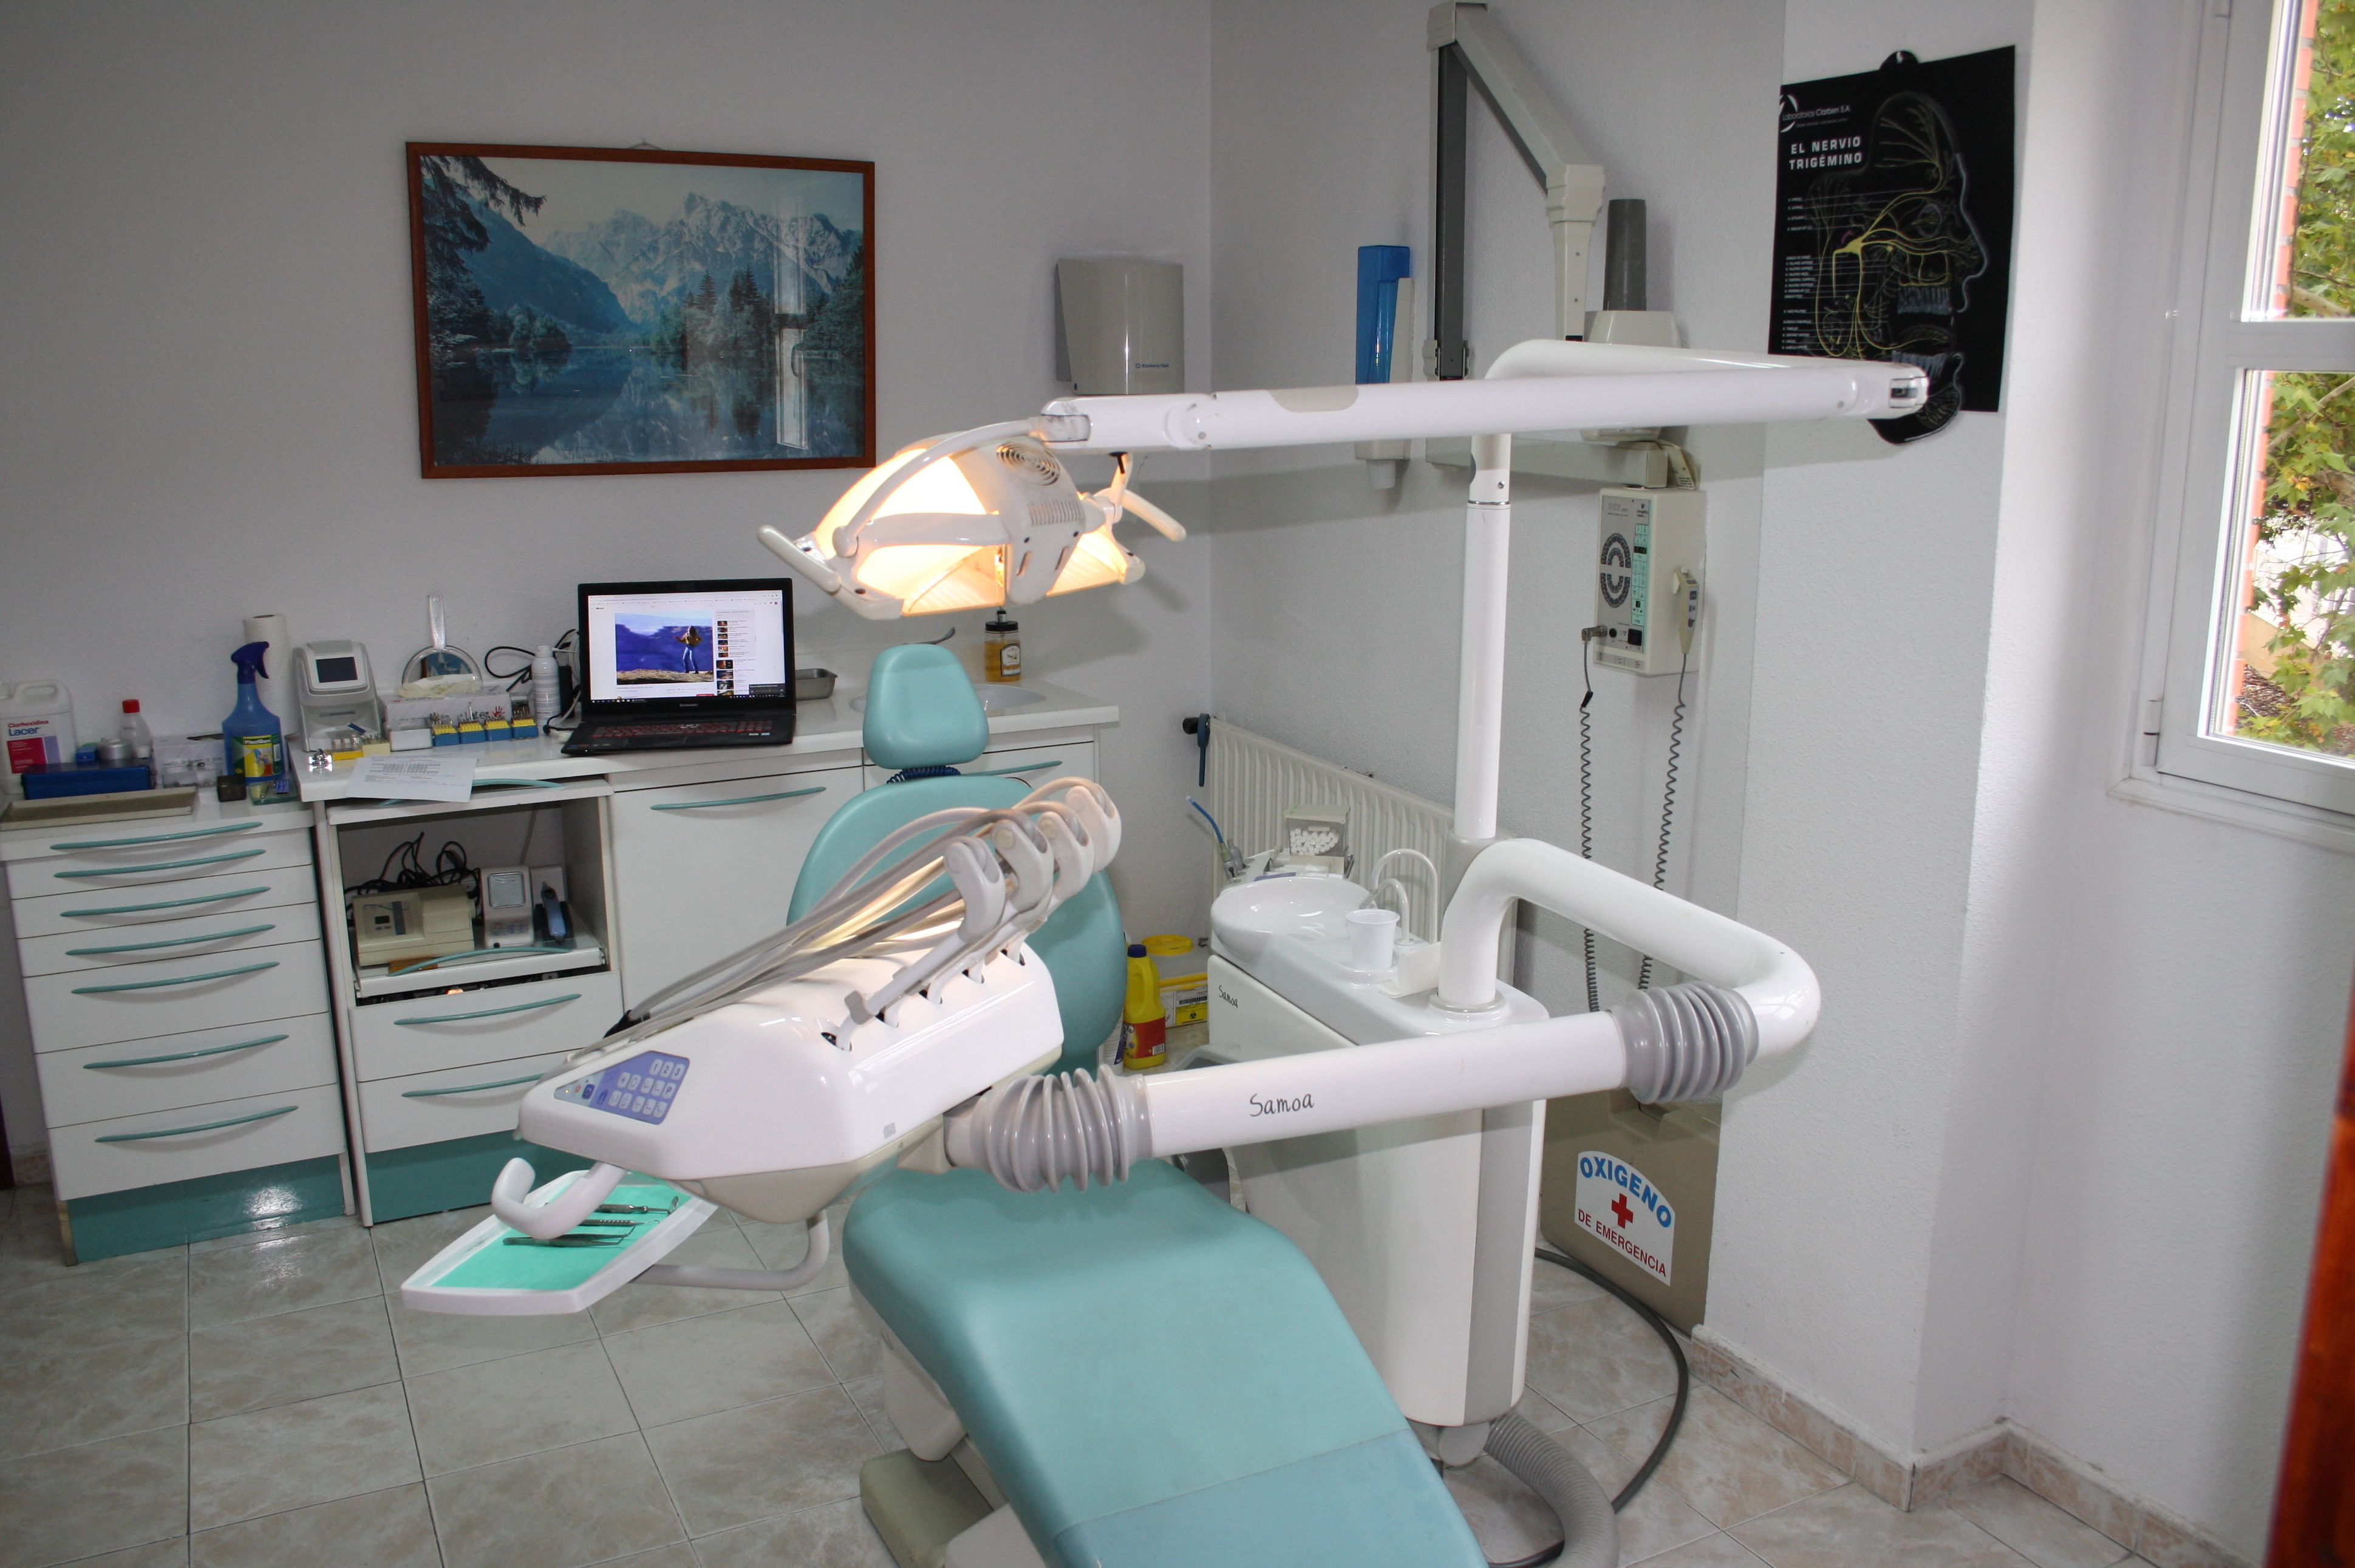 Foto 4 de Dentistas en Alcalá de Henares | Clínica Dental Espartales - José Antonio Narváez